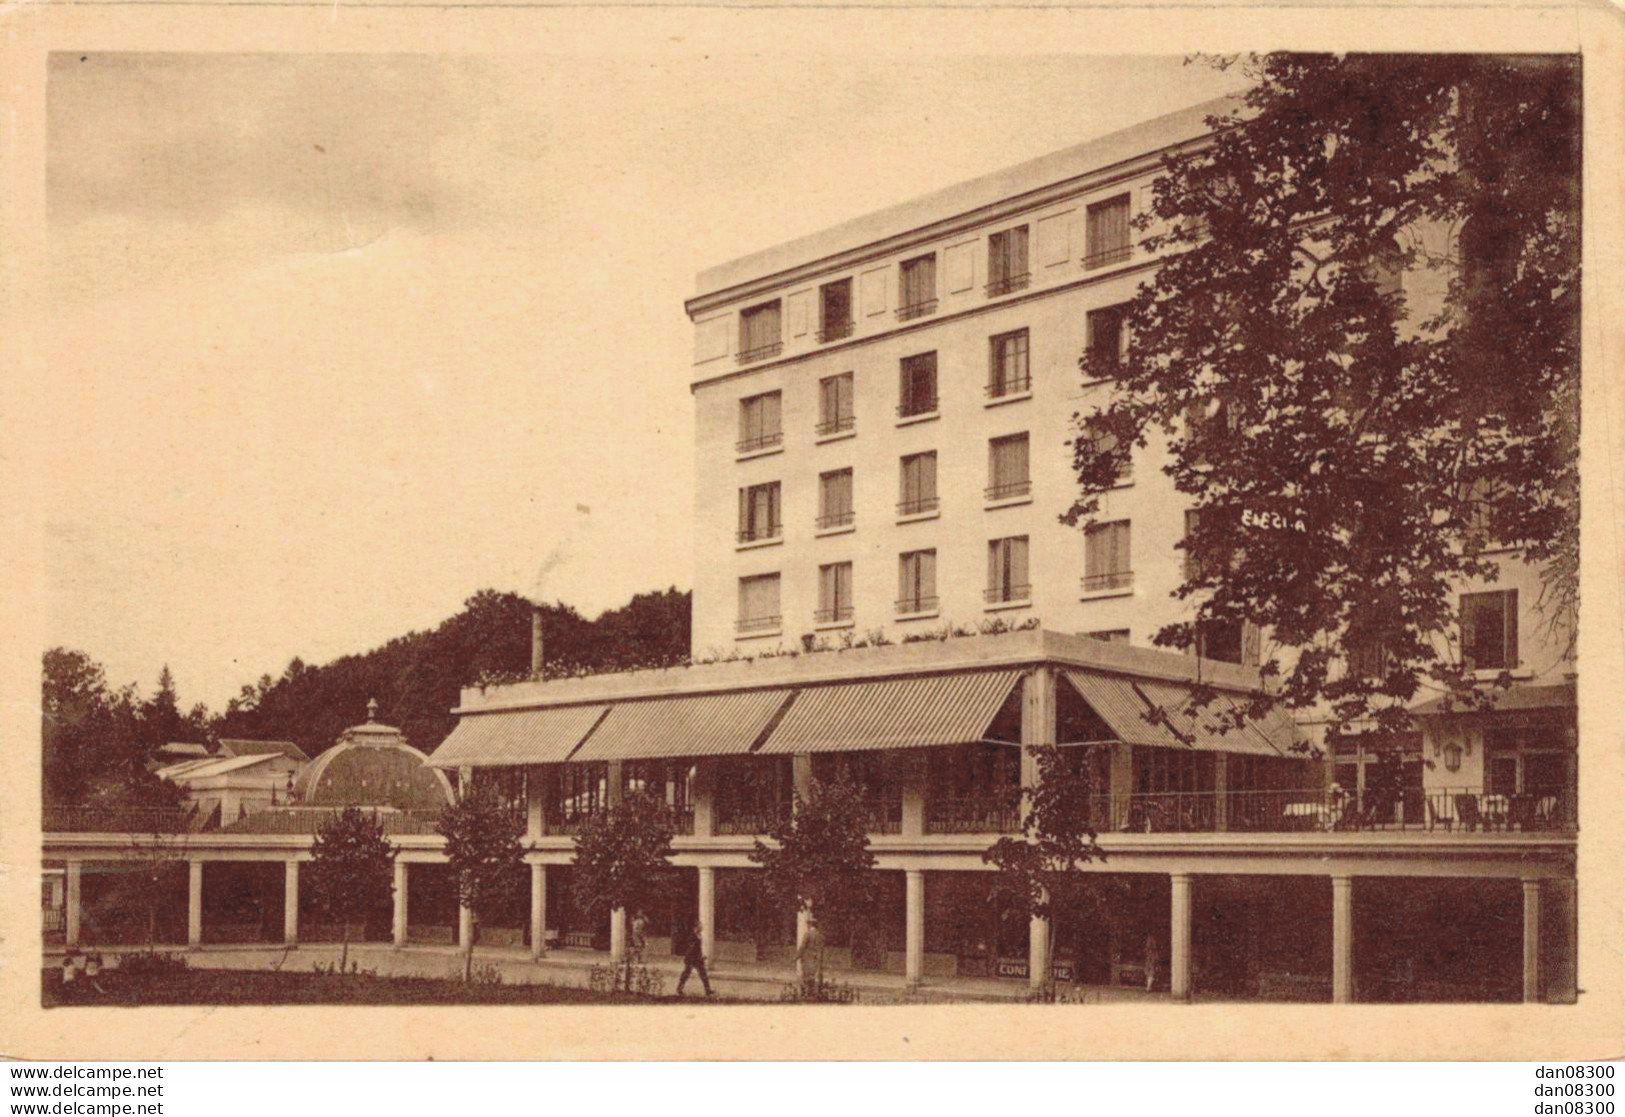 58 SAINT HONORE LES BAINS THERMAL HOTEL - Saint-Honoré-les-Bains